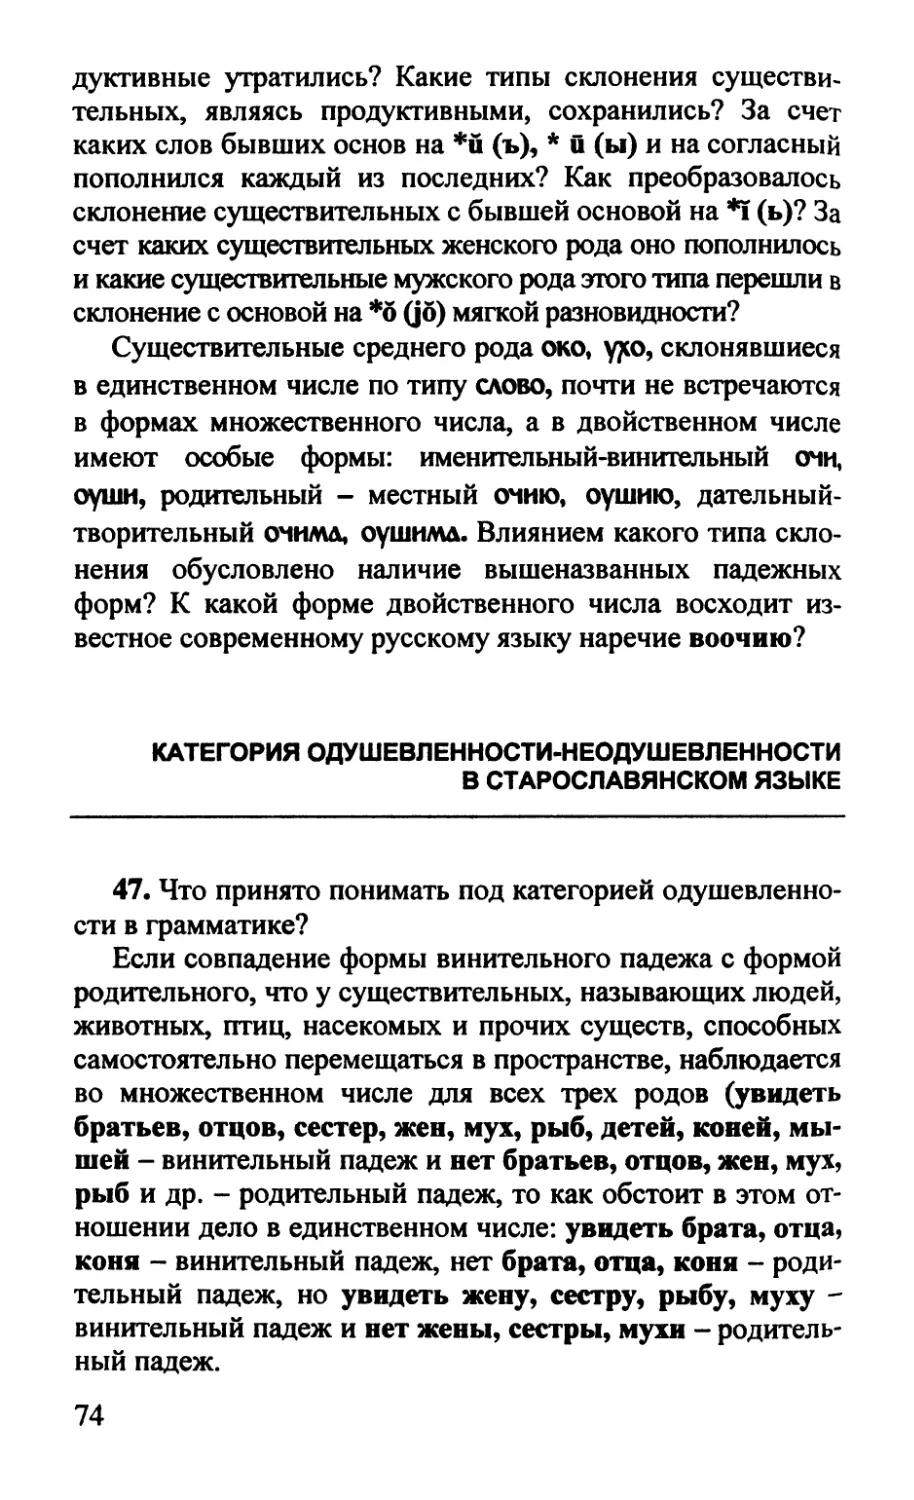 Категория одушевленности-неодушевленности в старославянском языке